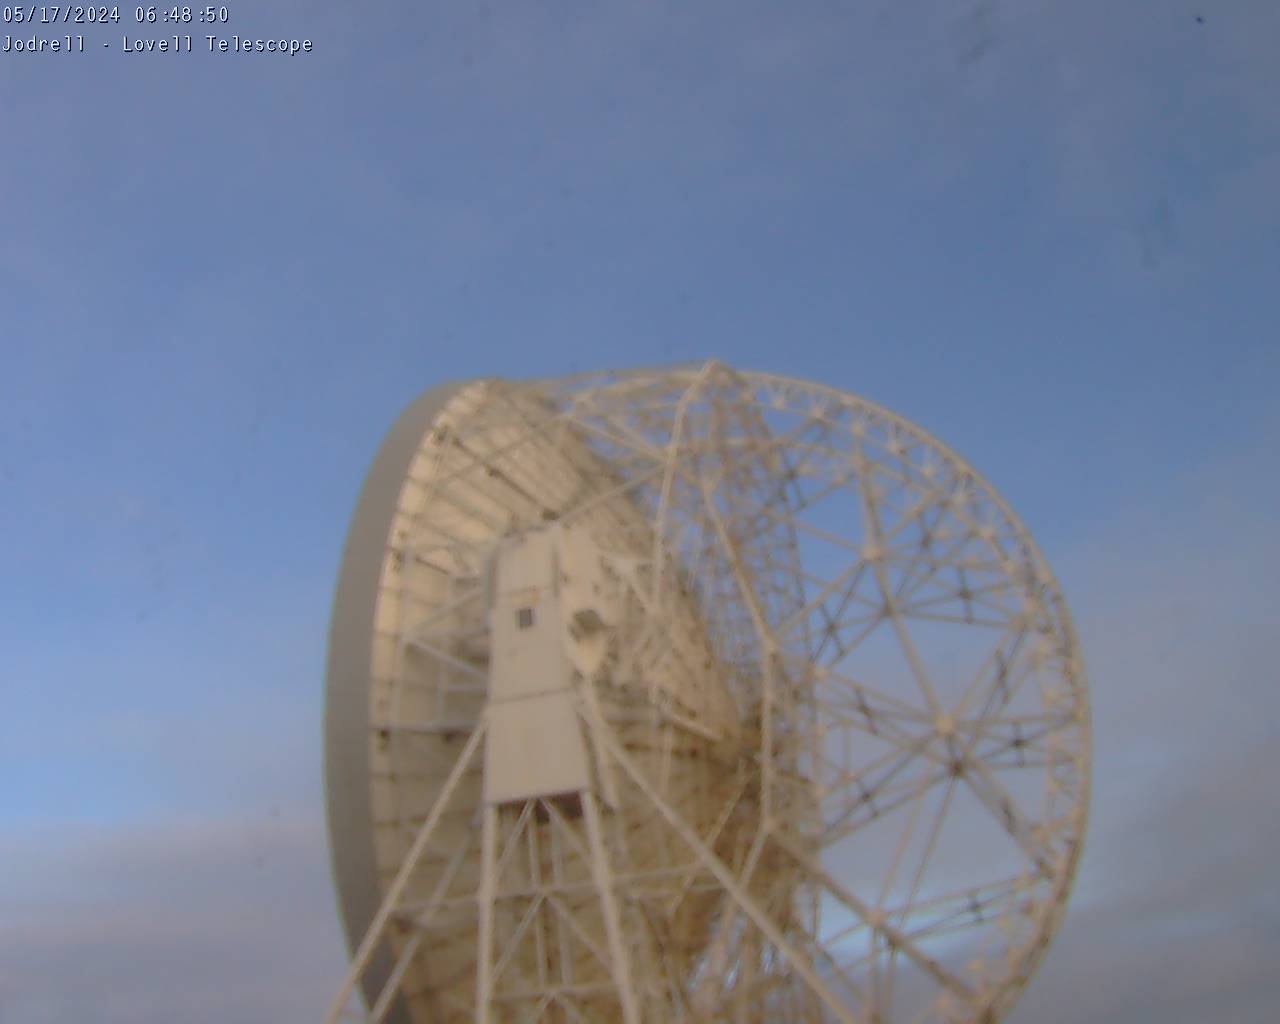 Observatoire de Jodrell Bank Sa. 06:49